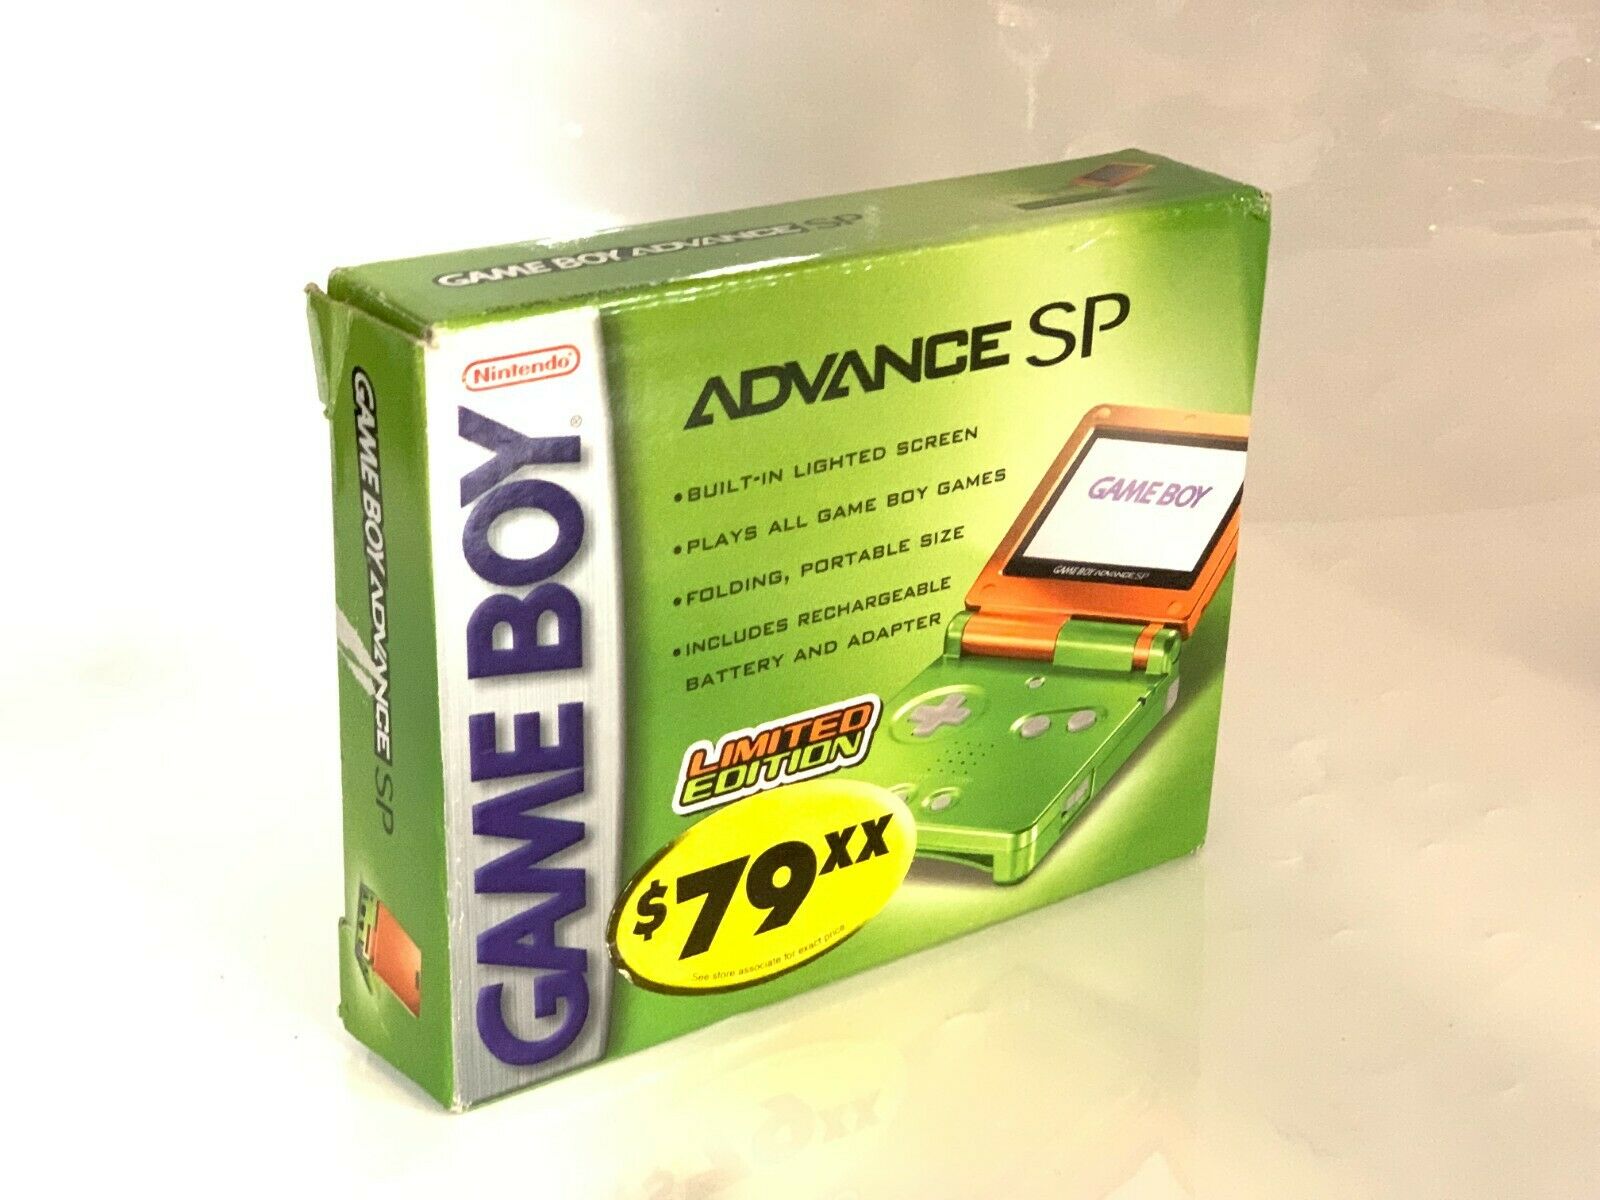 Game Boy Advance SP Lime/Orange упаковка